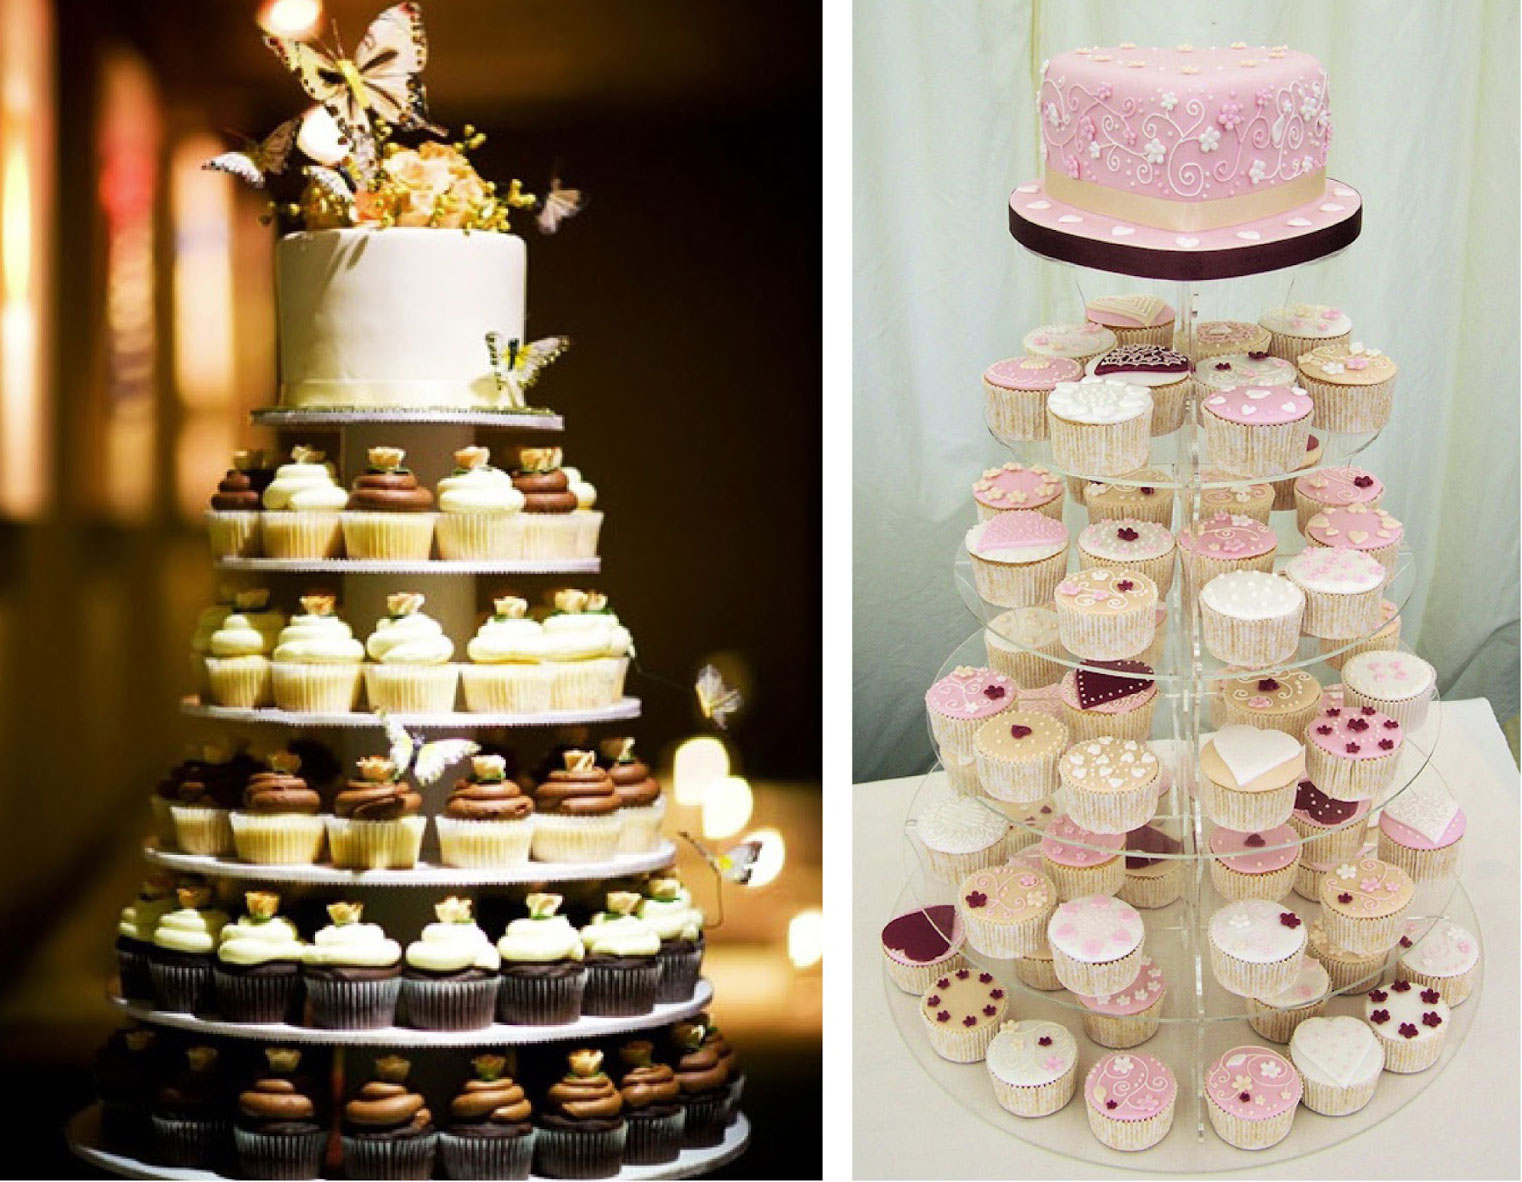 Tháp bánh cưới cupcake đẹp như mơ cho một đám cưới hoàn hảo